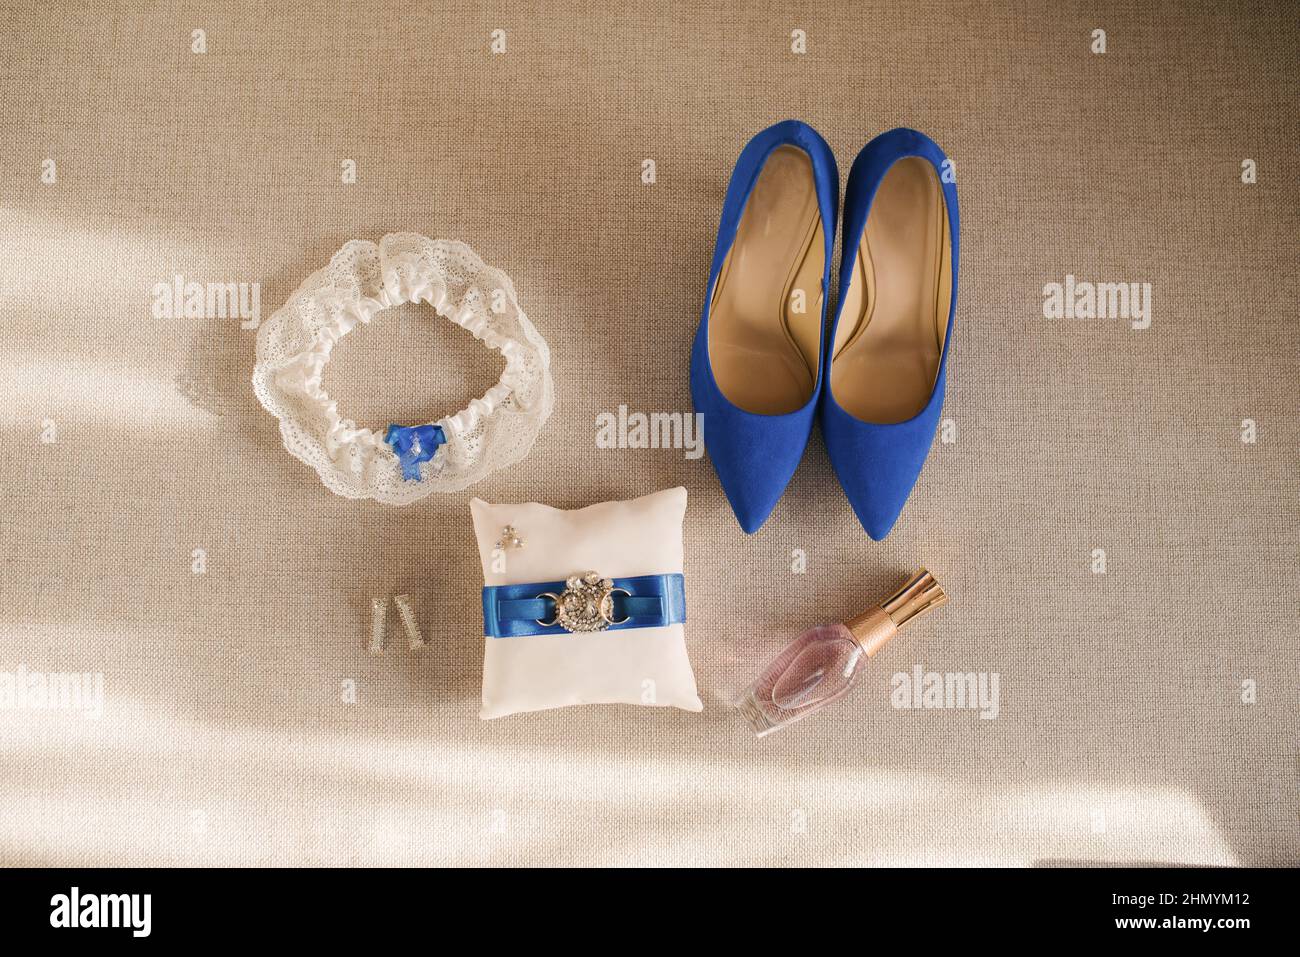 Los accesorios para bodas de la novia son blancos y azules: Zapatos, cojín de anillo, perfume, liga y pendientes Foto de stock